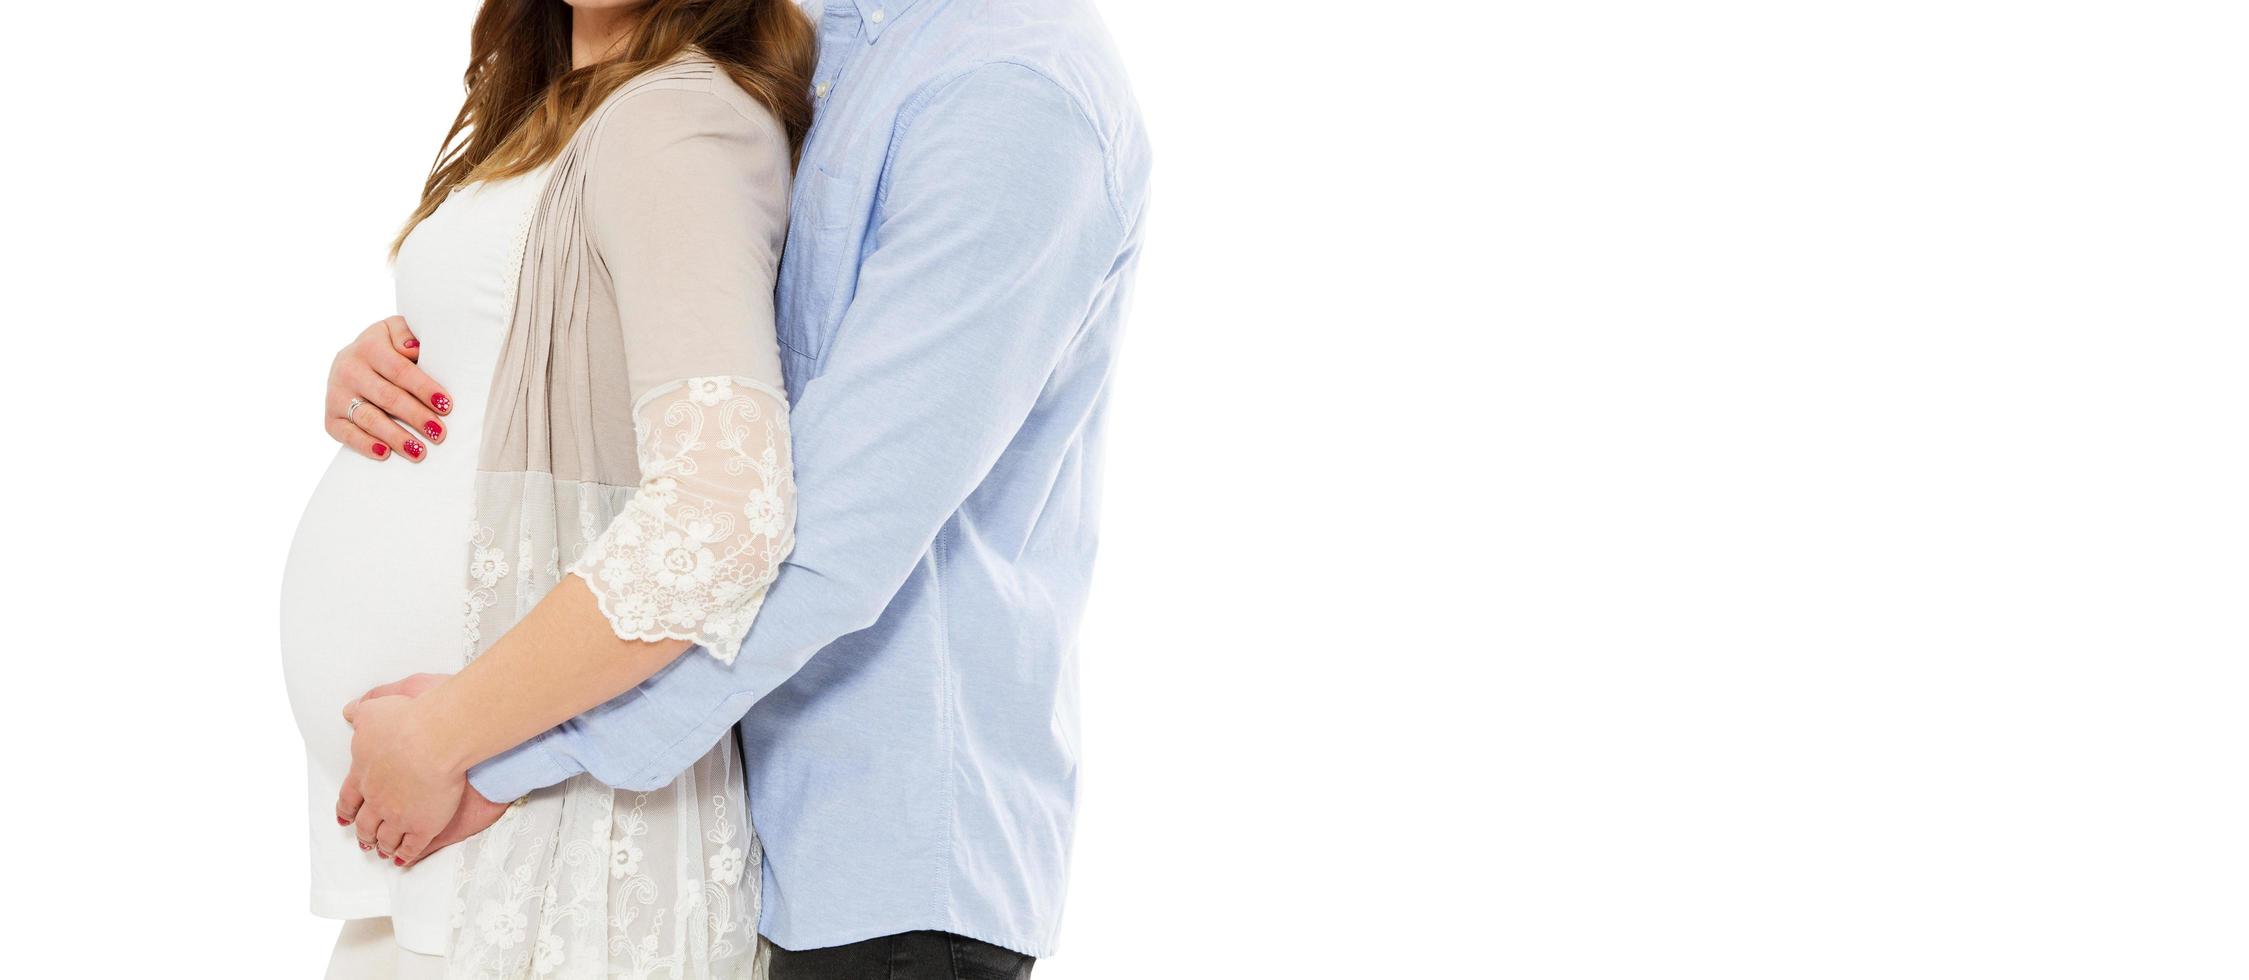 jovem grávida com marido isolado no branco - imagem recortada foto